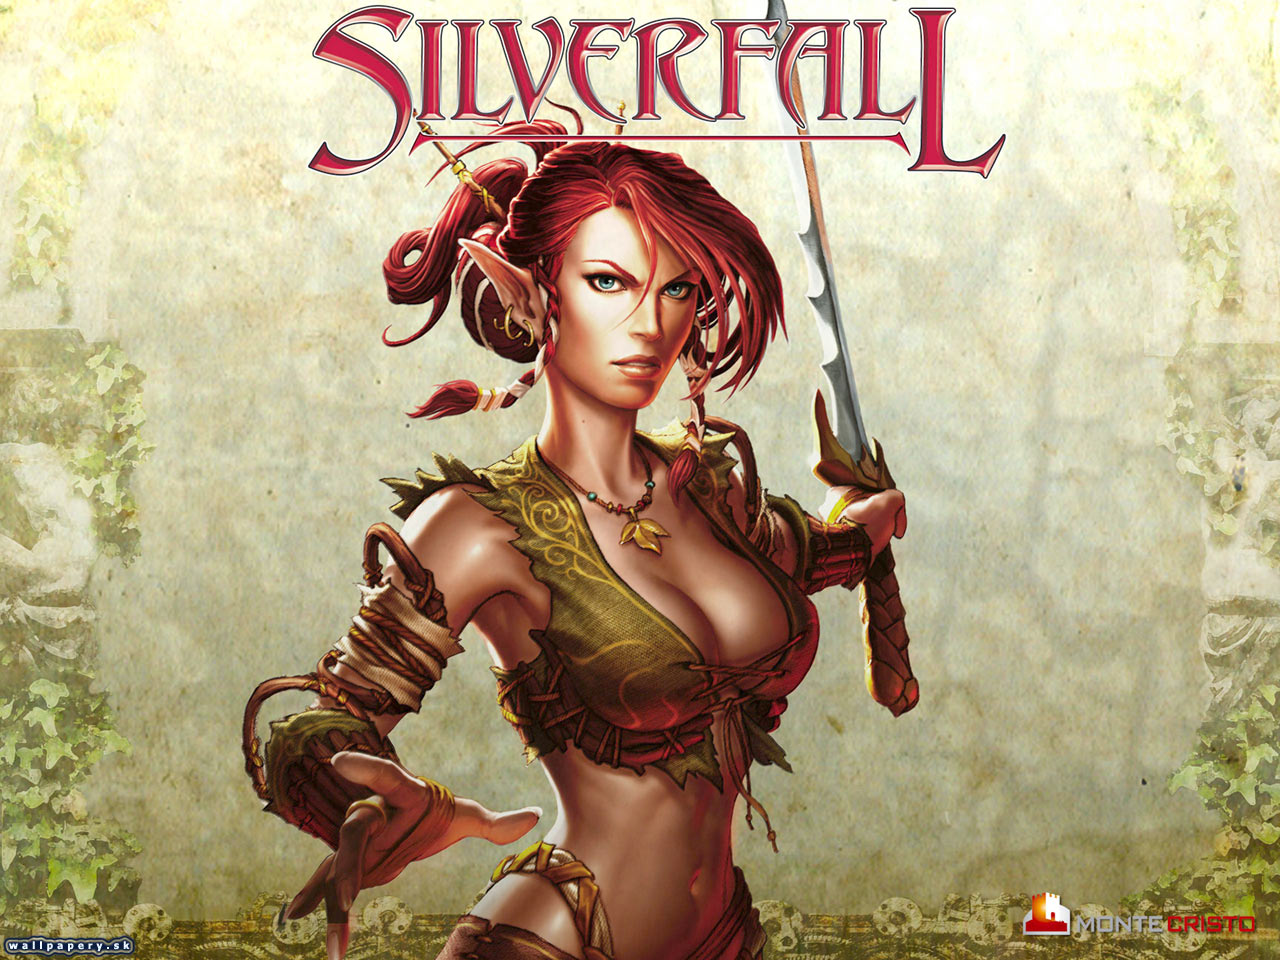 Silverfall - wallpaper 7